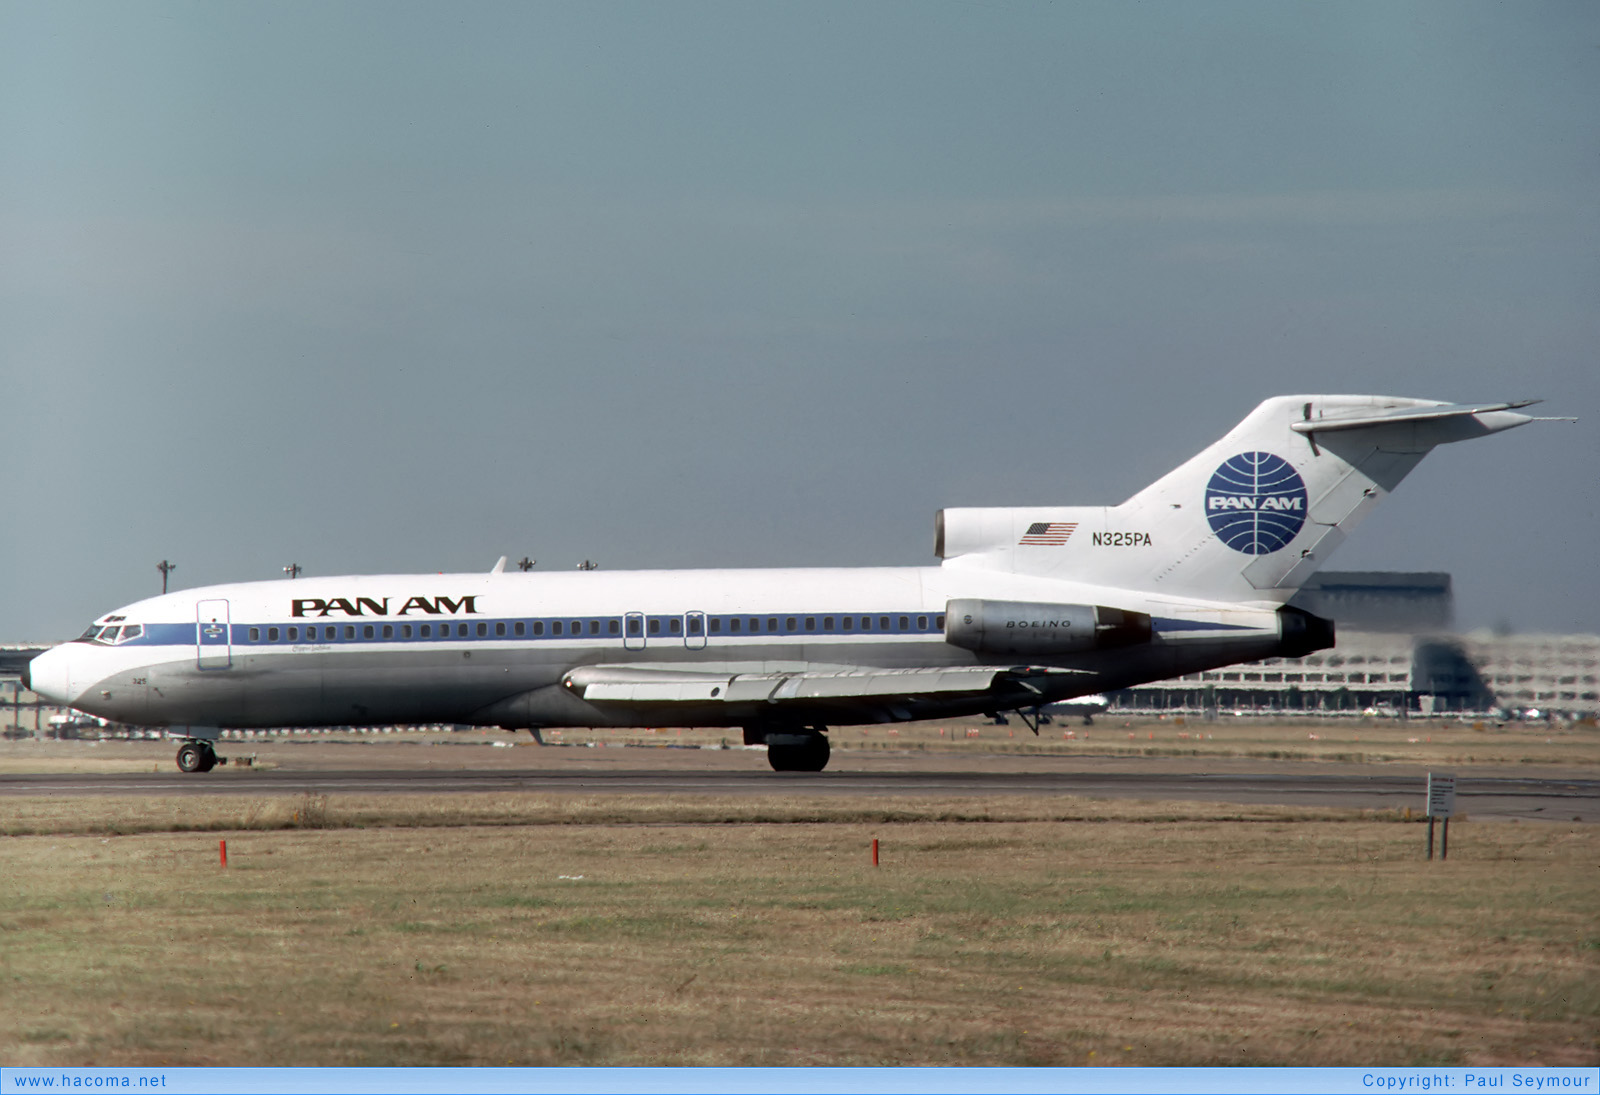 Foto von N325PA - Pan Am Clipper Duesseldorf / Dawn / Inca / Stuttgart / Syren / Dufte Biene / Luftikus - London Heathrow Airport - 16.09.1979